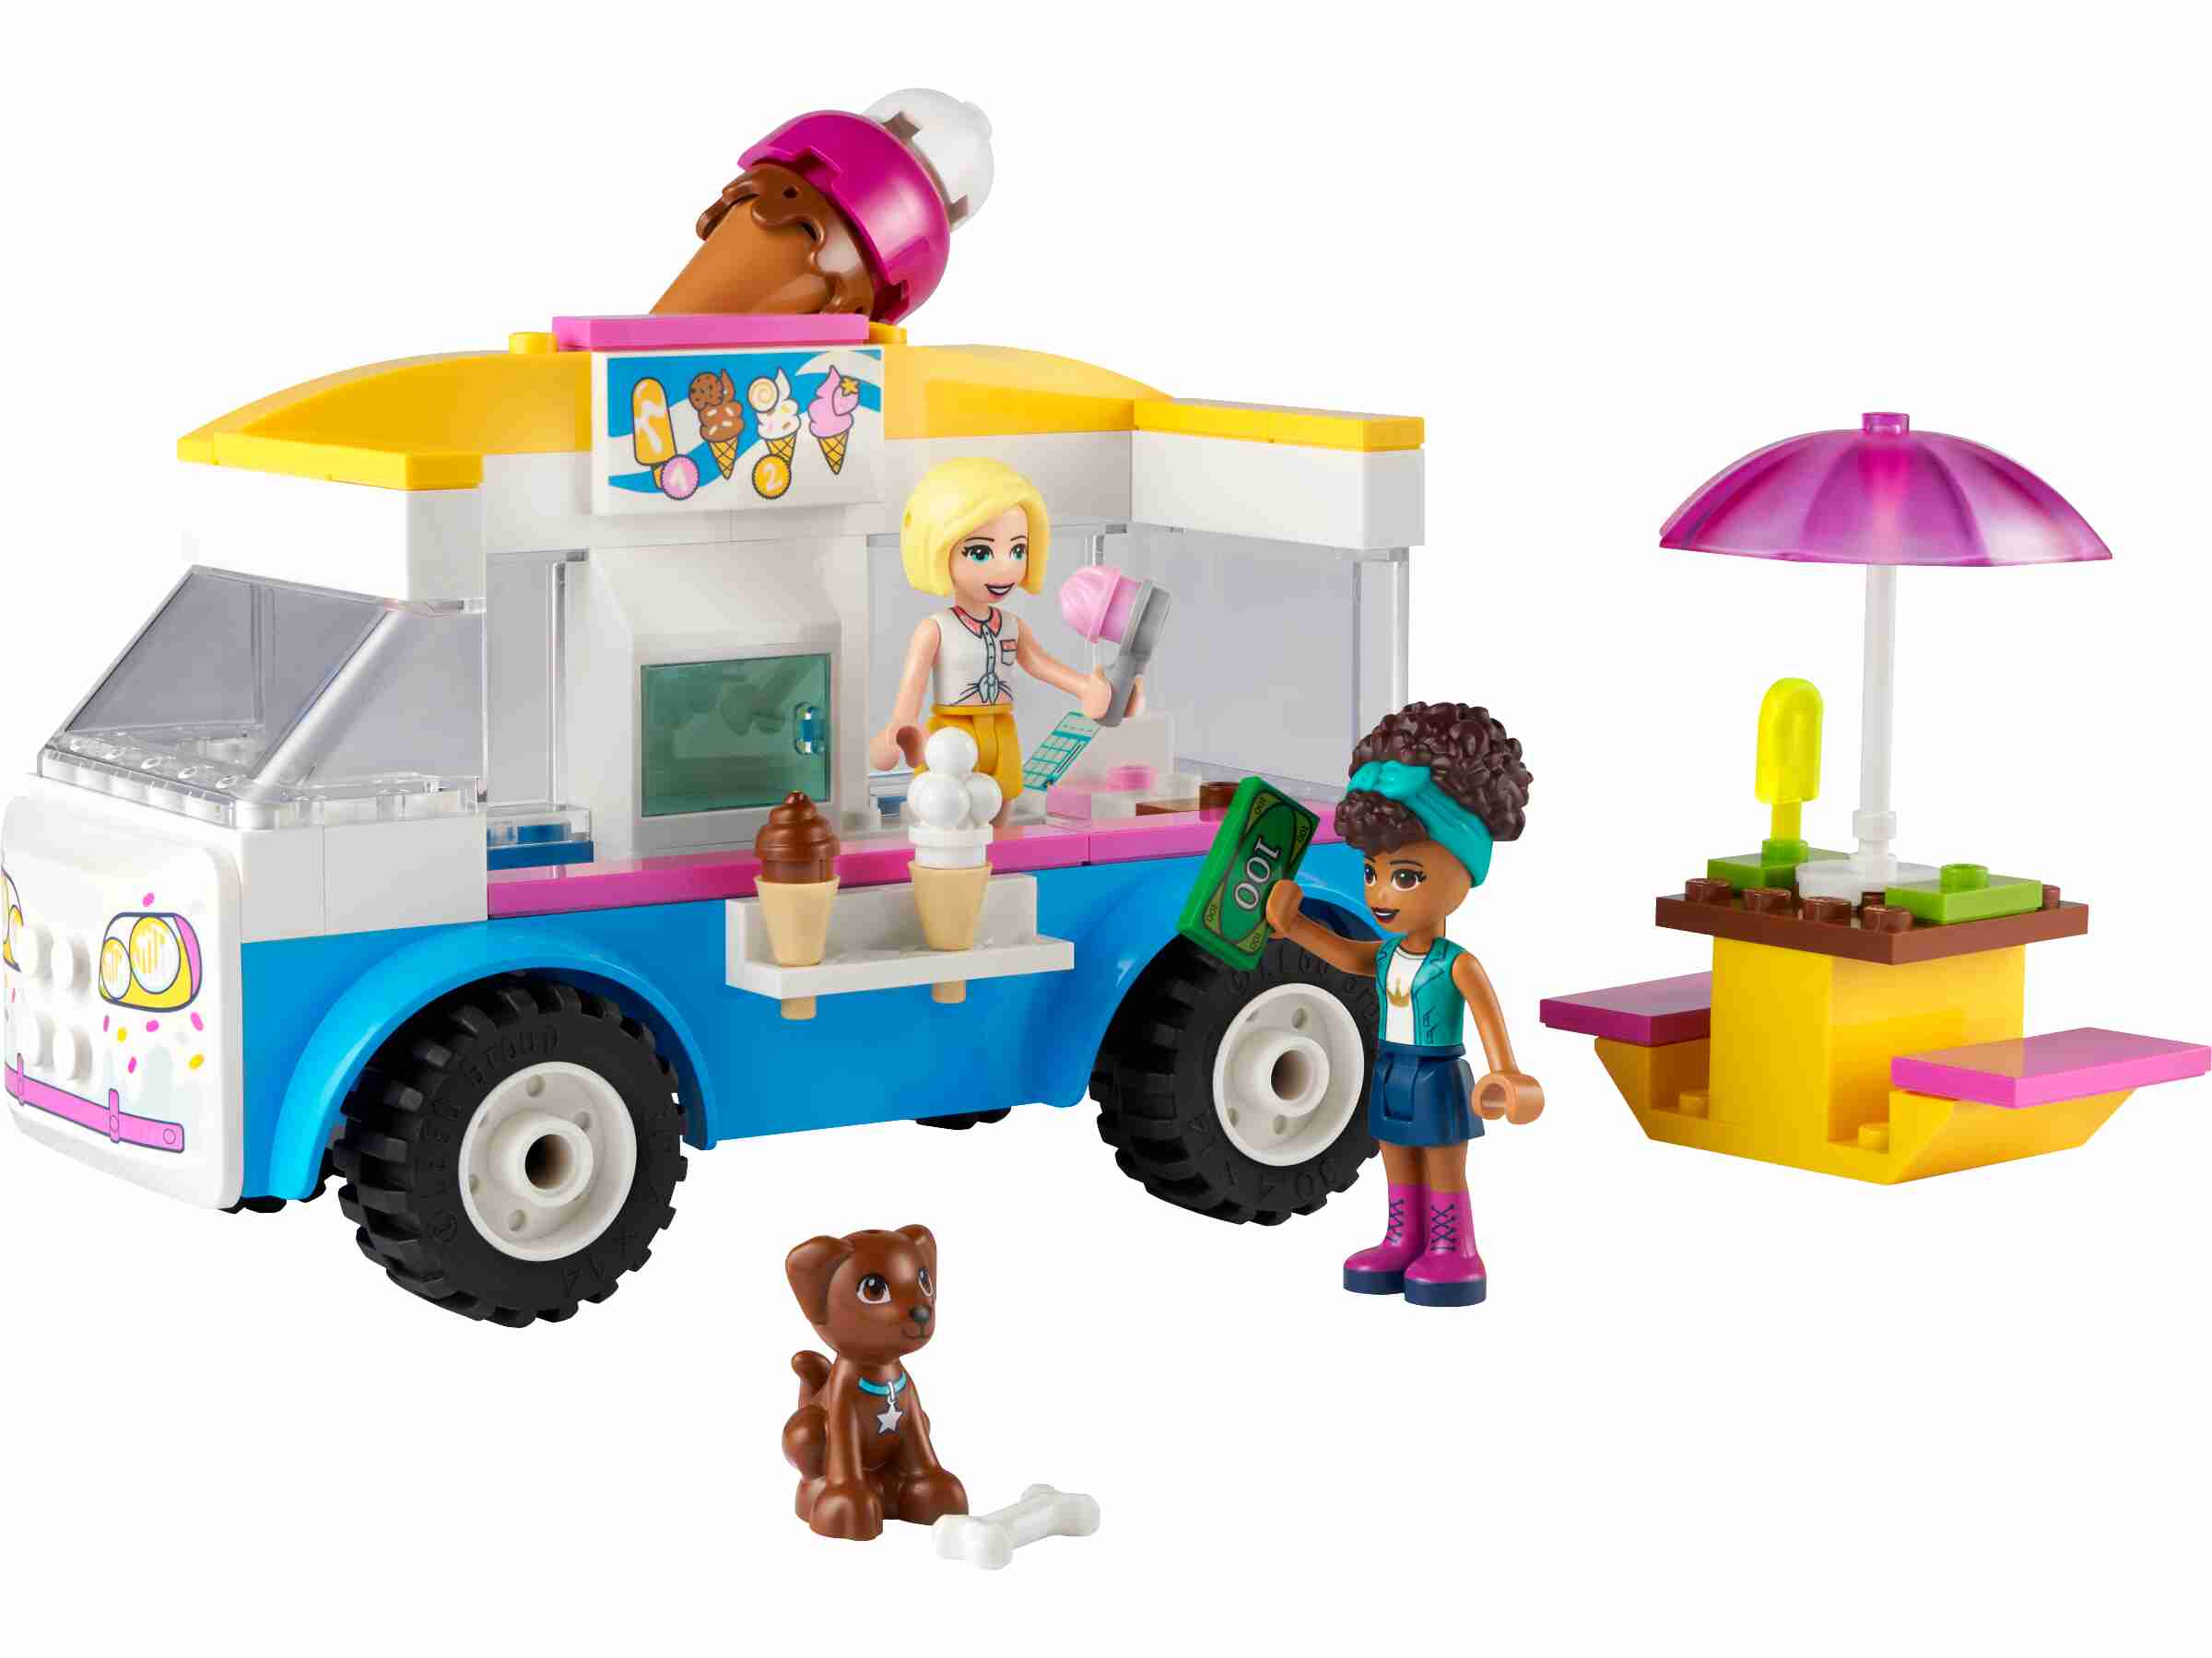 LEGO Friends 41733 La boutique mobile de Bubble Tea, Jouet Filles et Garçons  6 Ans, Jeu Créatif, avec Véhicules, et Personnages Nova & Mathilde pas cher  